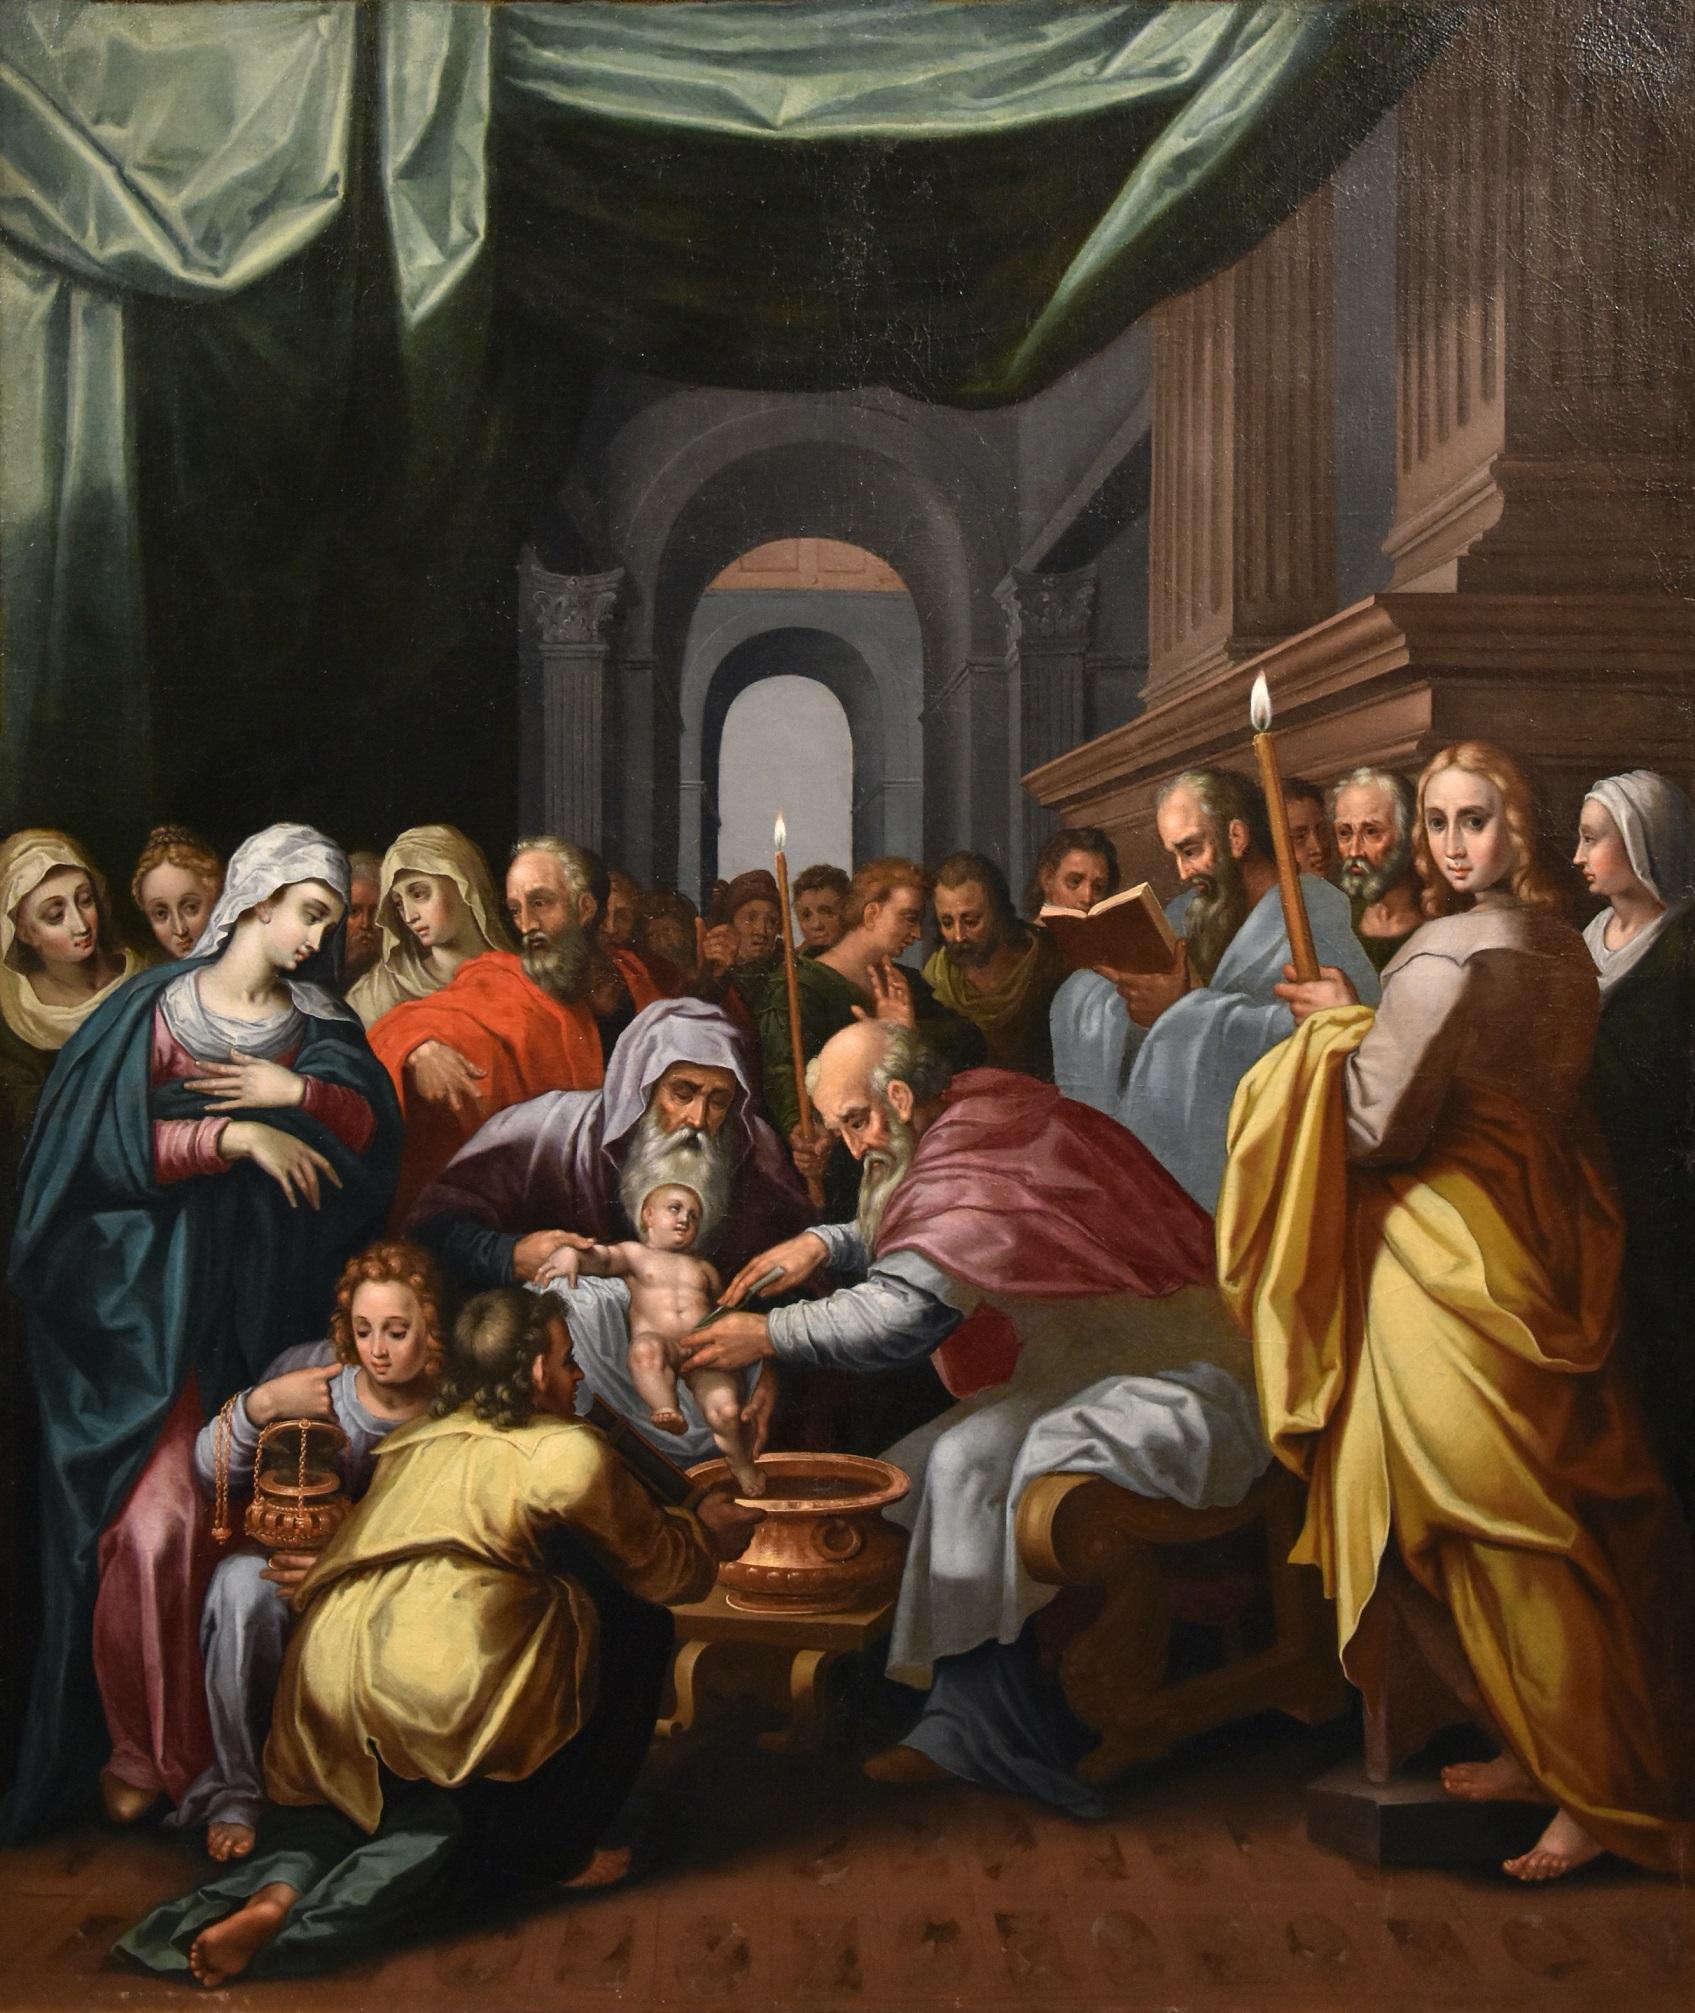 Gérard de Lairesse (Liège 1641 - Amsterdam 1711), attribué
Circoncision du Christ

Huile sur toile, 120 x 102 cm, Dans le cadre 138 x 119 cm.

La peinture, d'excellente qualité et conservation, illustre un passage raconté dans l'Évangile de Luc